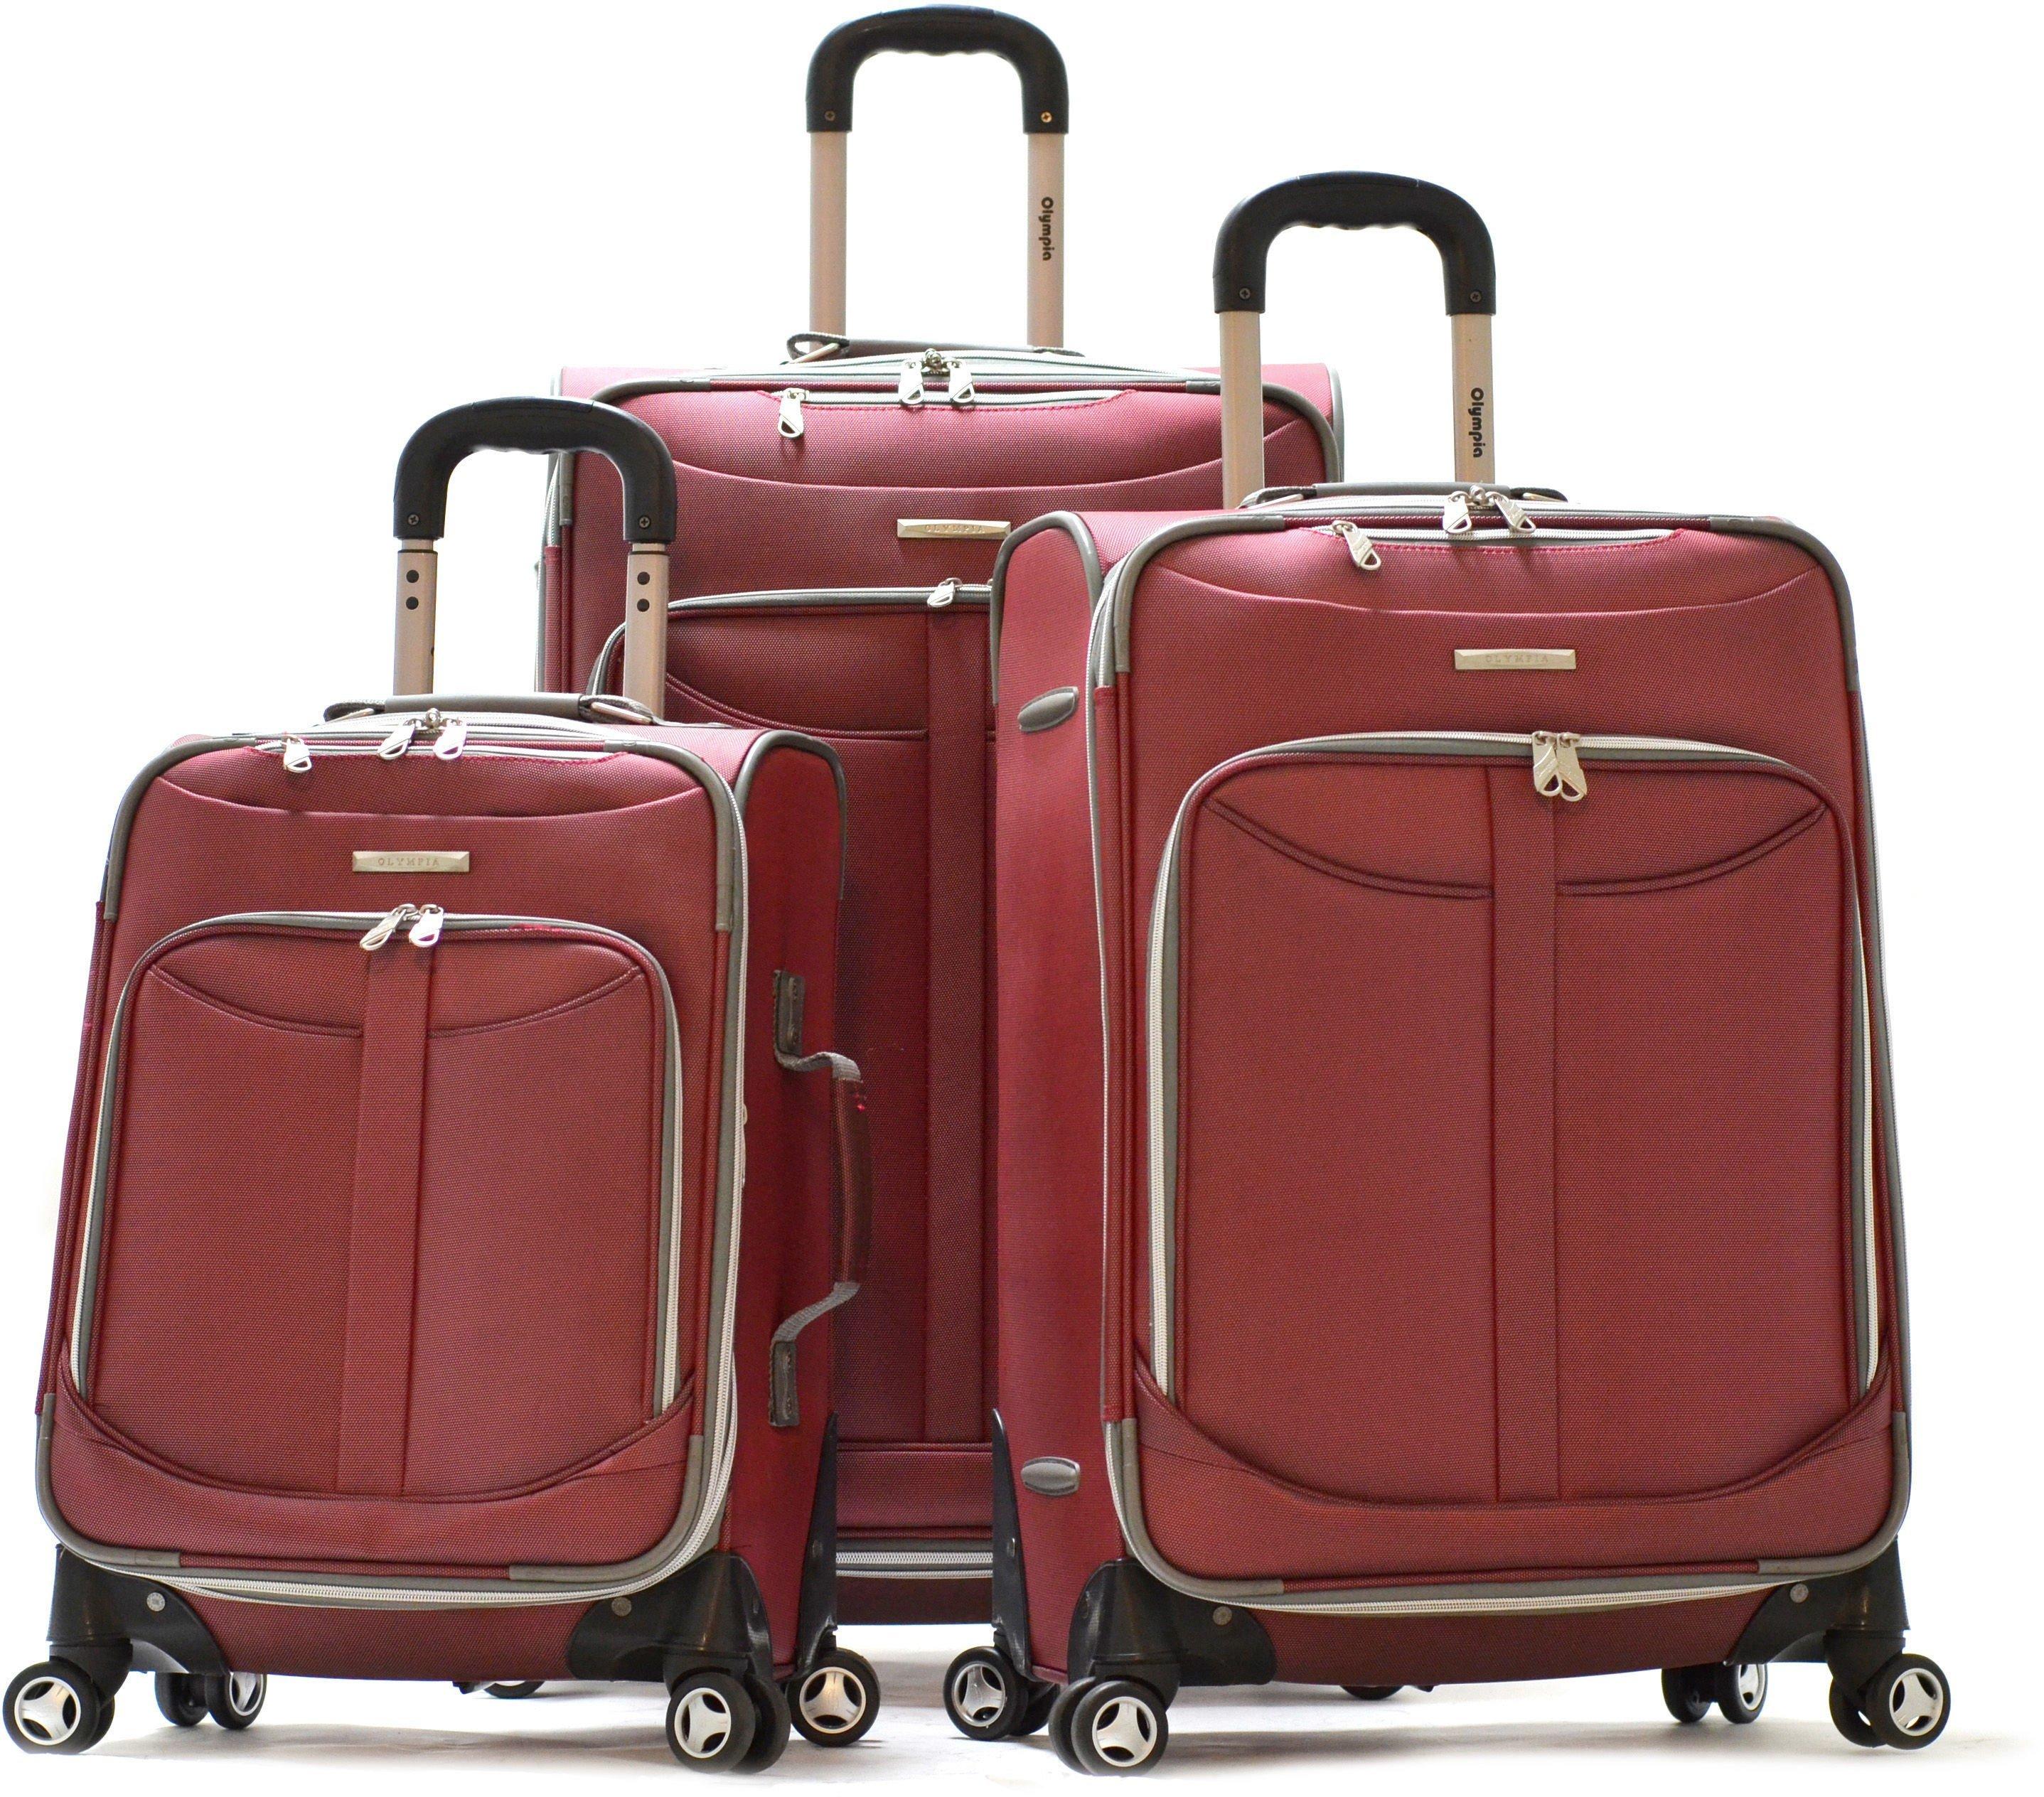 Olympia Luggage Tuscany 3-pc. Luggage Set | Bealls Florida